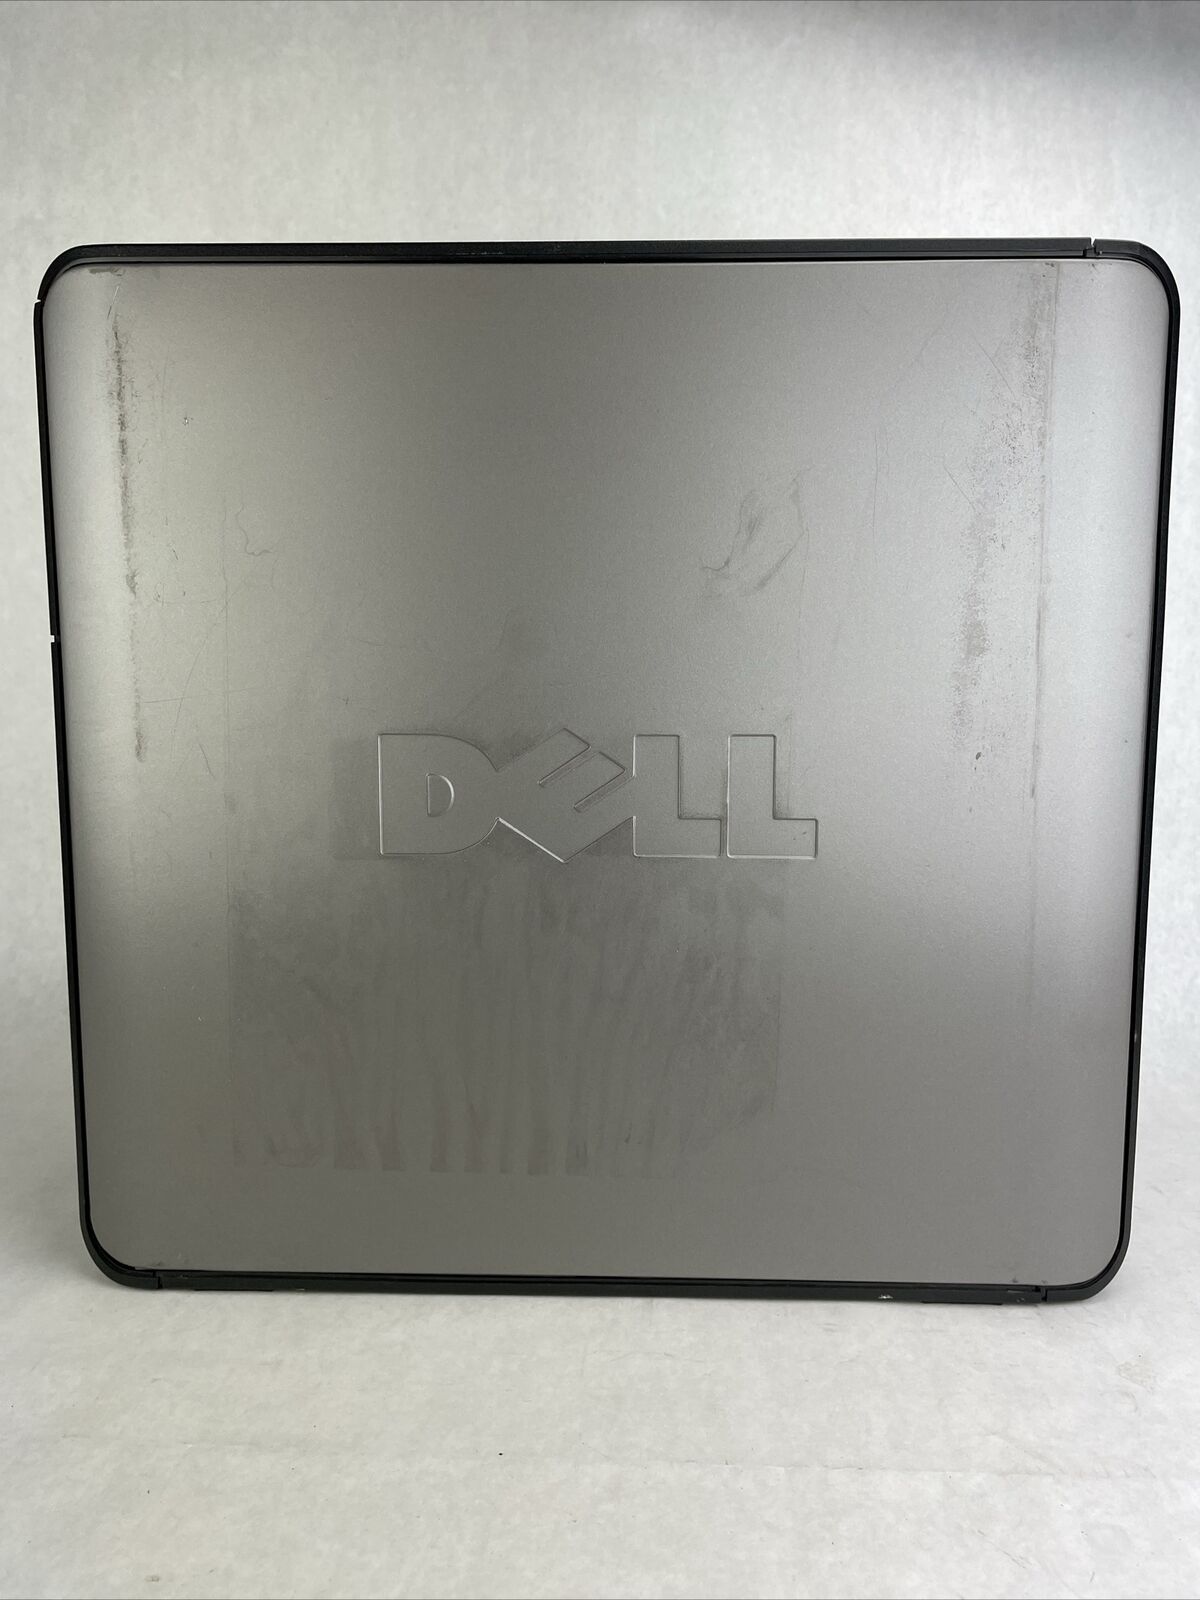 Dell Optiplex 360 MT Intel Pentium Dual-Core E5200 2.5GHz 2GB RAM No HDD No OS